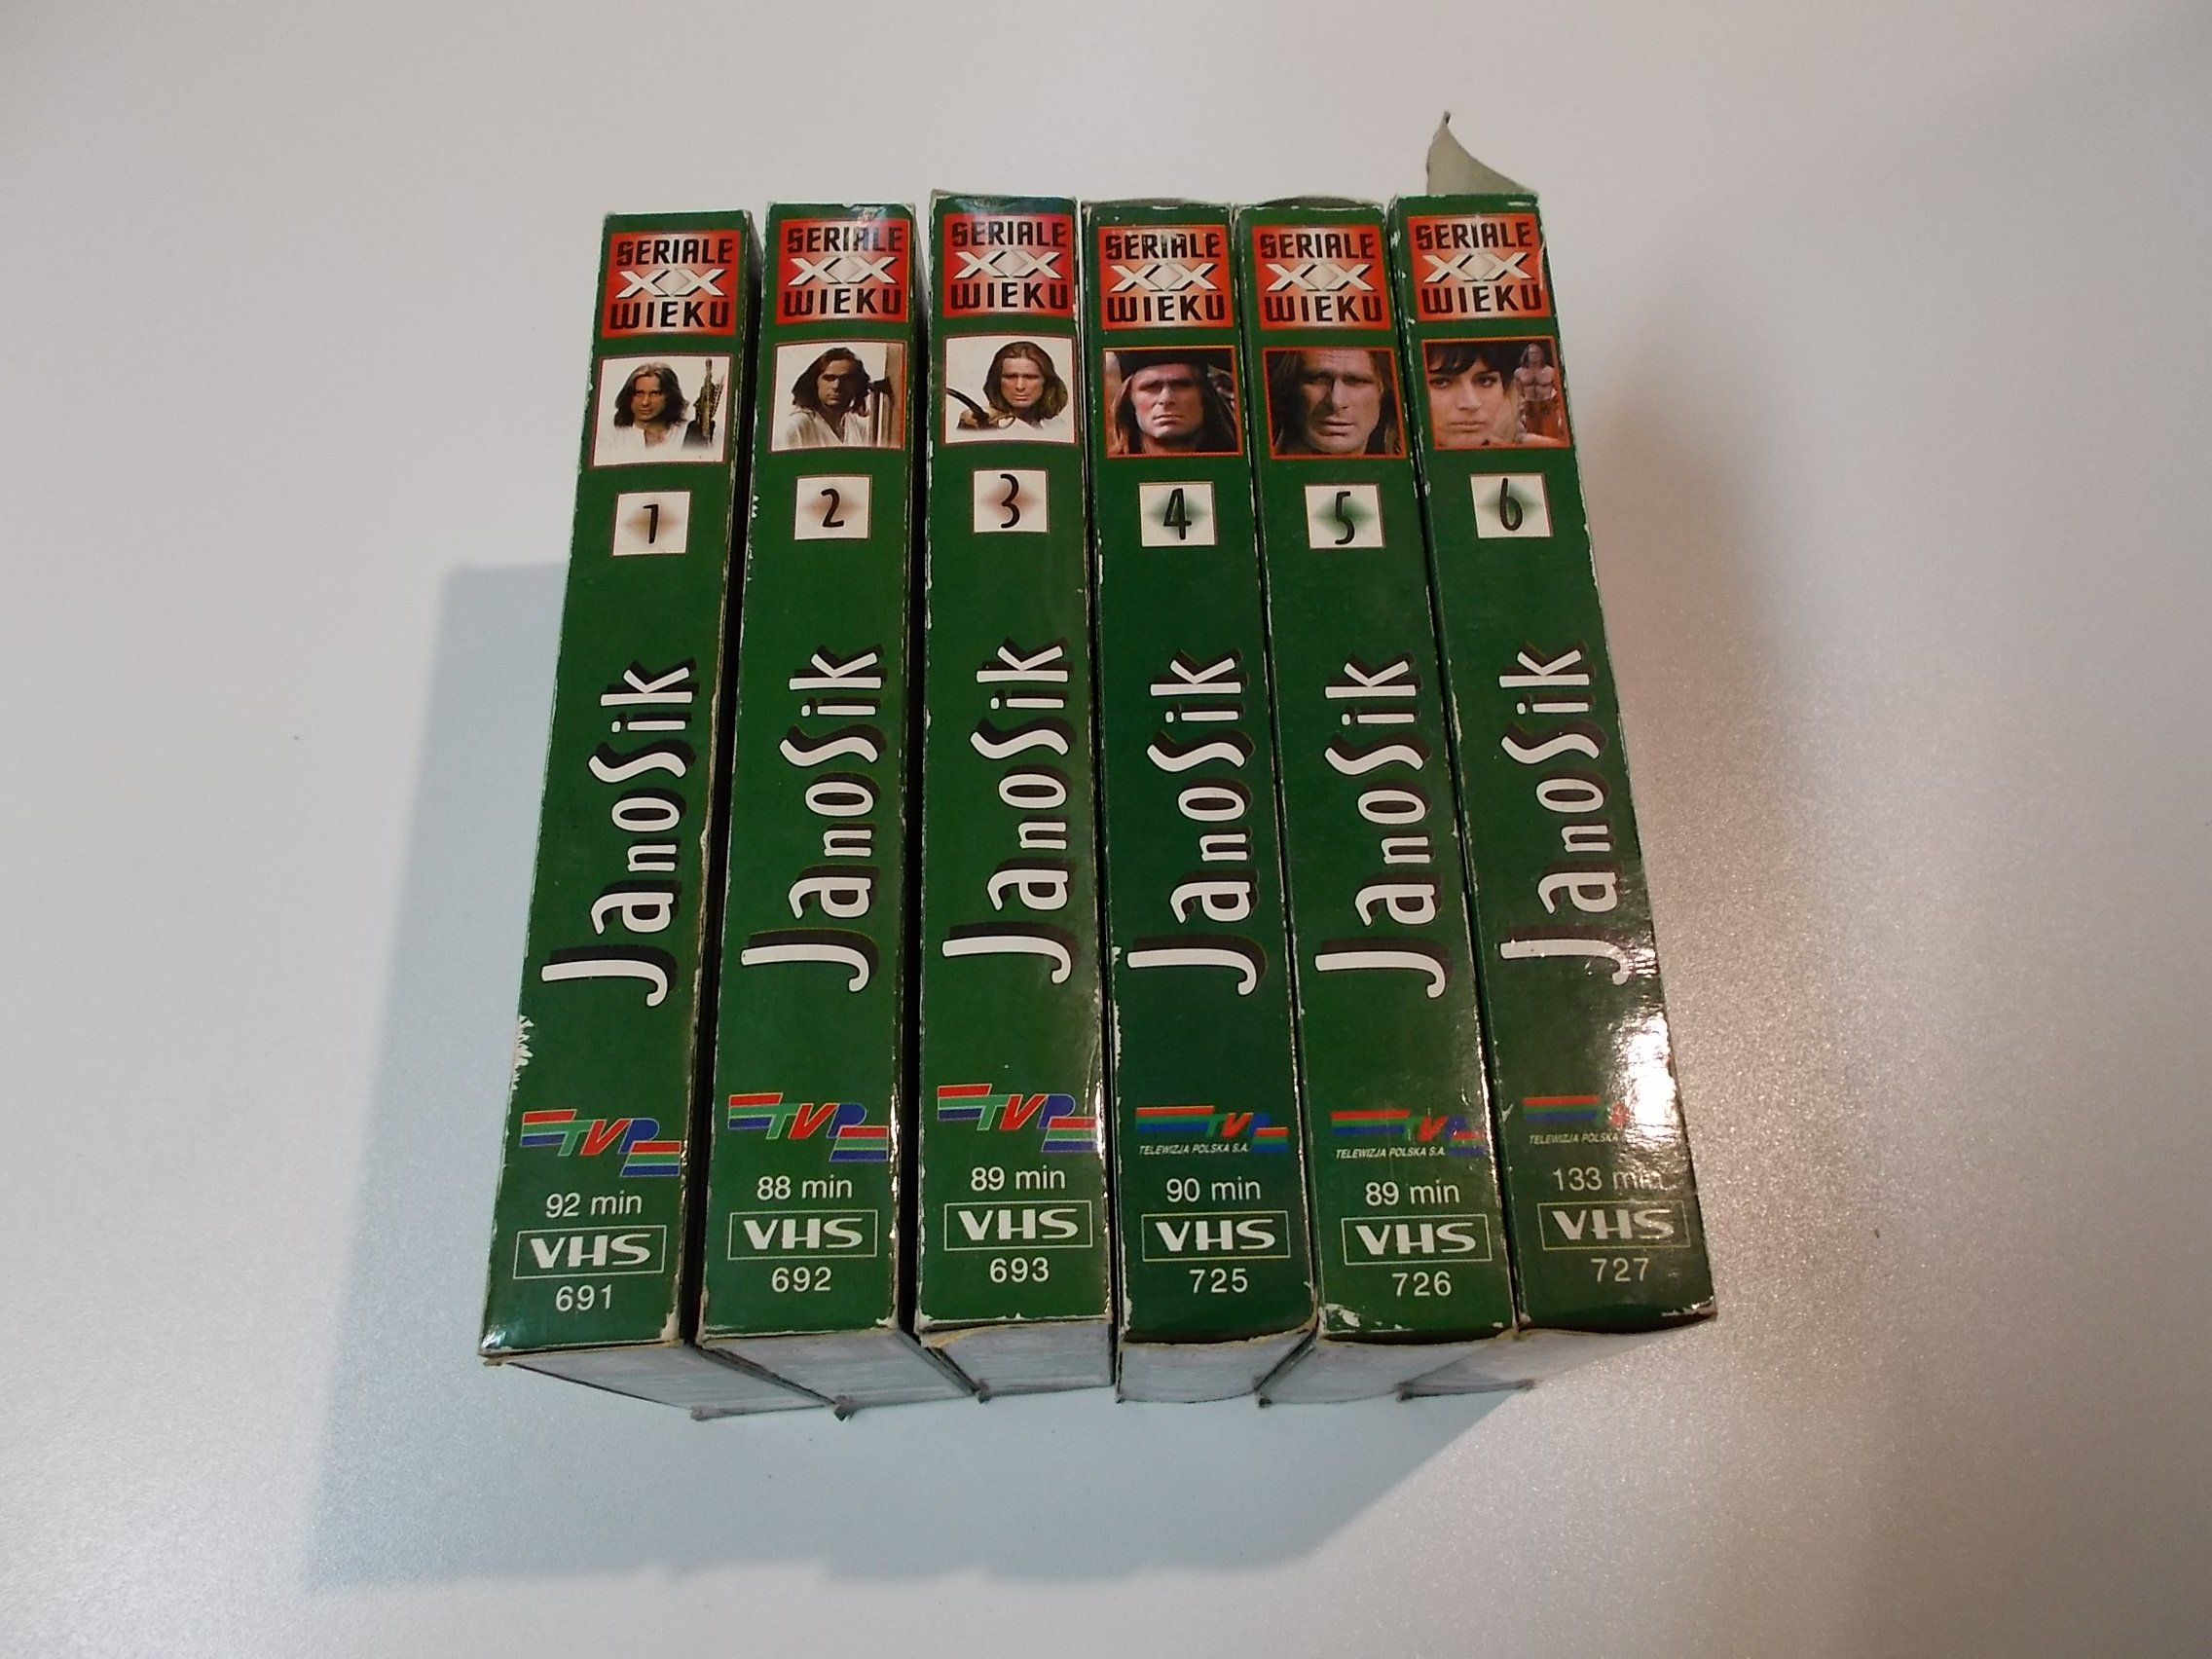 JANOSIK od 1 do 6 - kaseta VHS - 1470 Opole - AlleOpole.pl